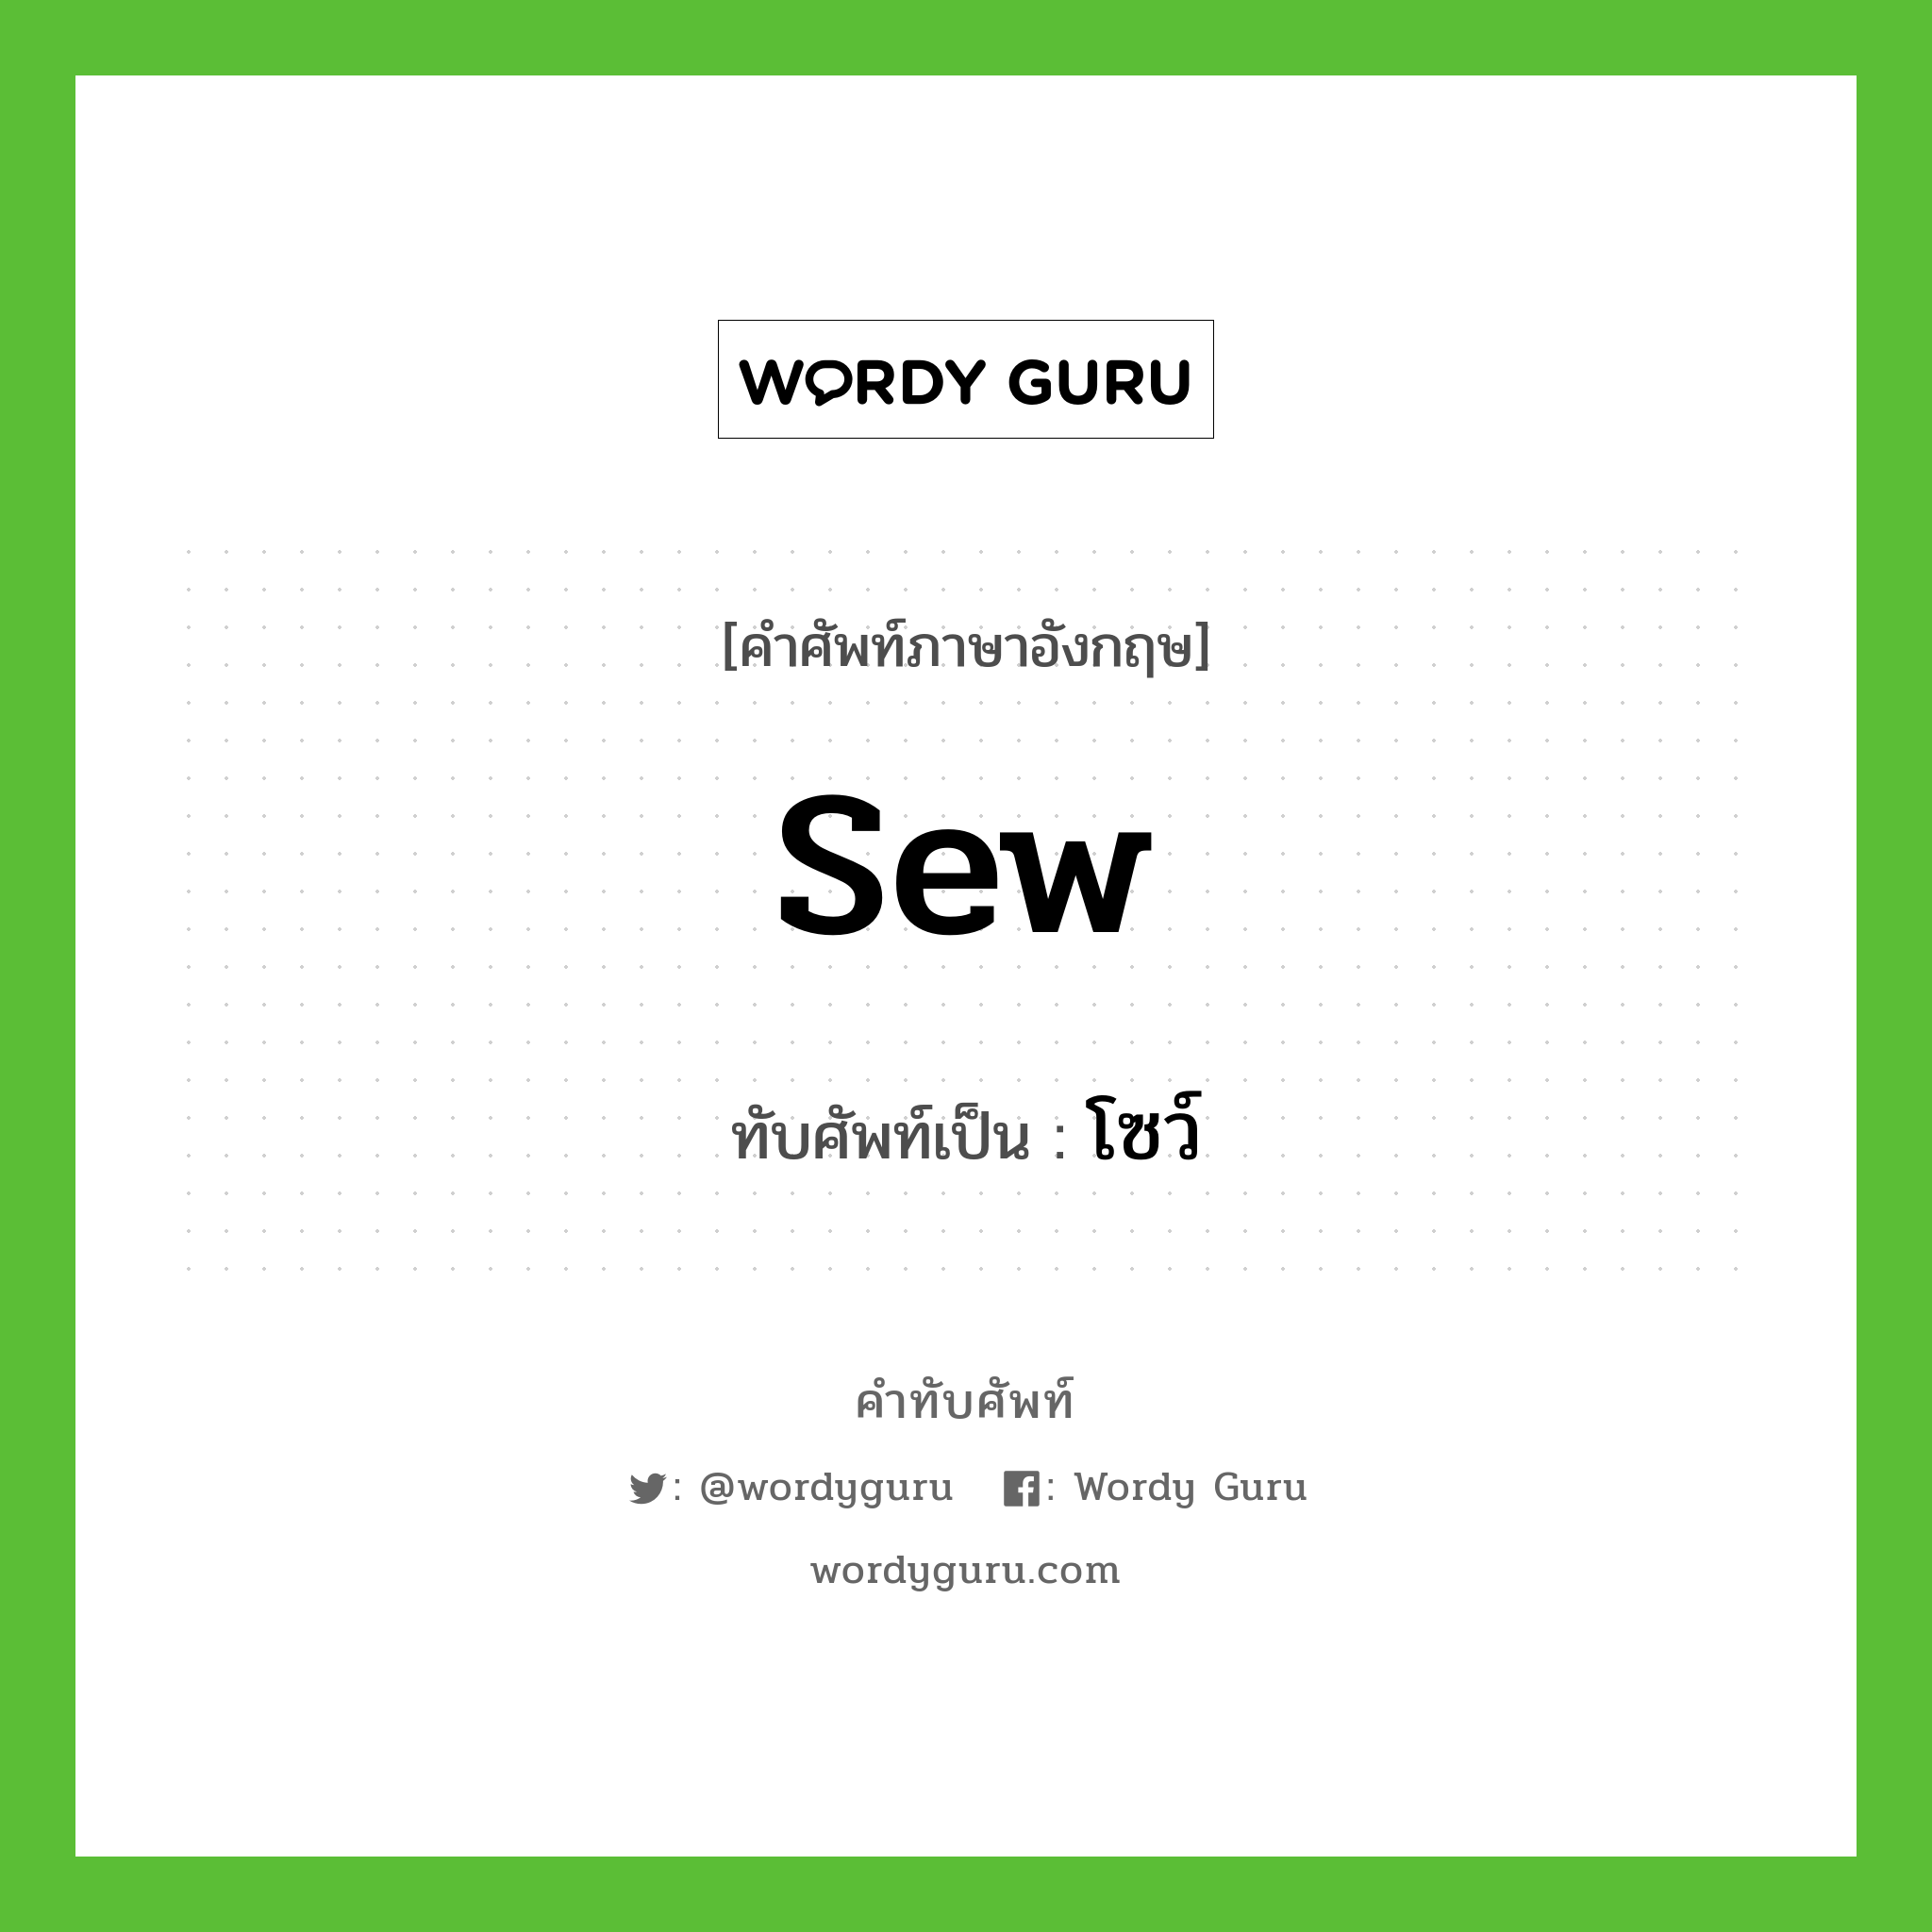 sew เขียนเป็นคำไทยว่าอะไร?, คำศัพท์ภาษาอังกฤษ sew ทับศัพท์เป็น โซว์